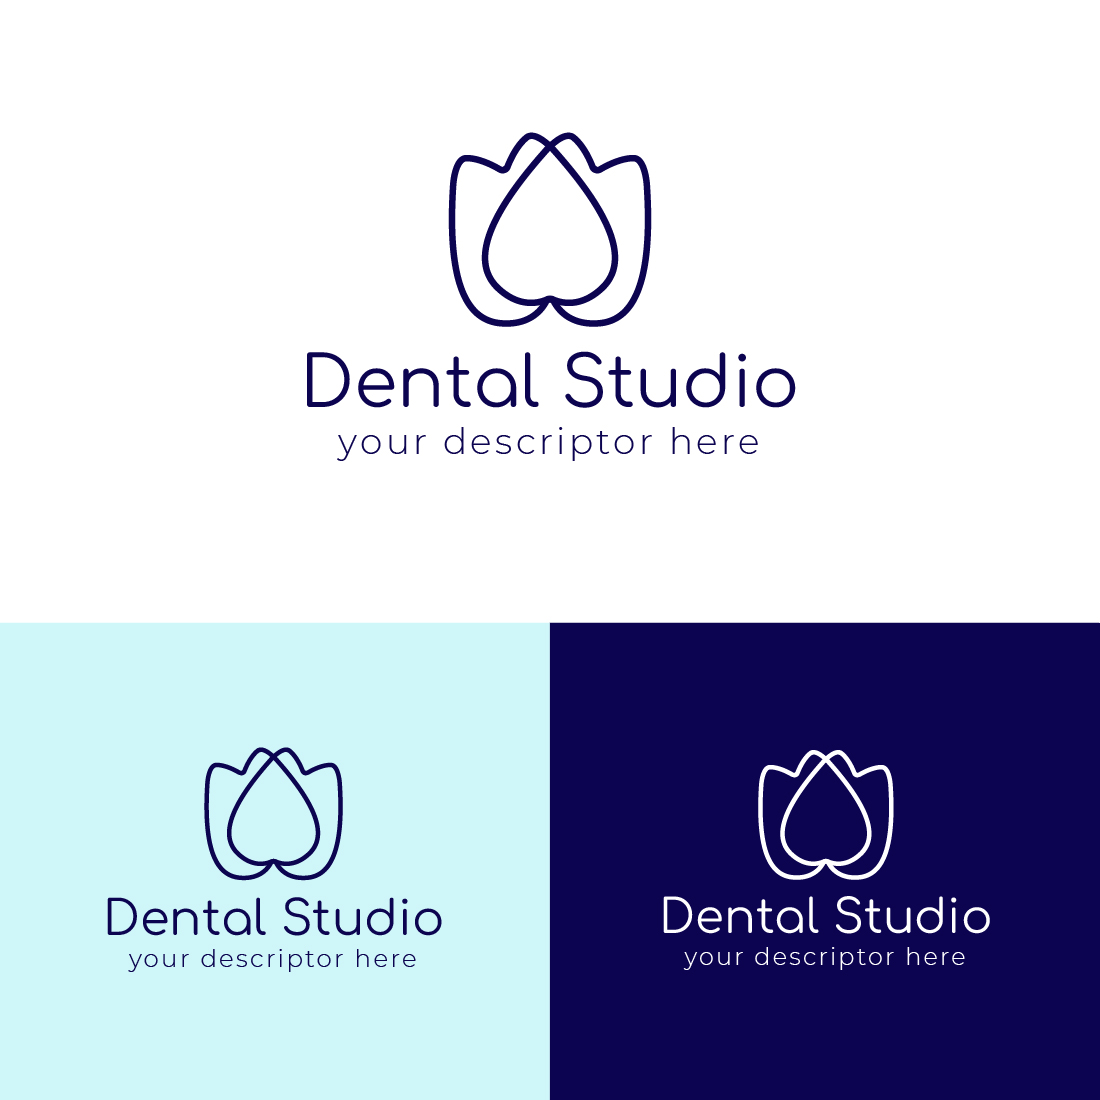 lotus dental logo cover image.